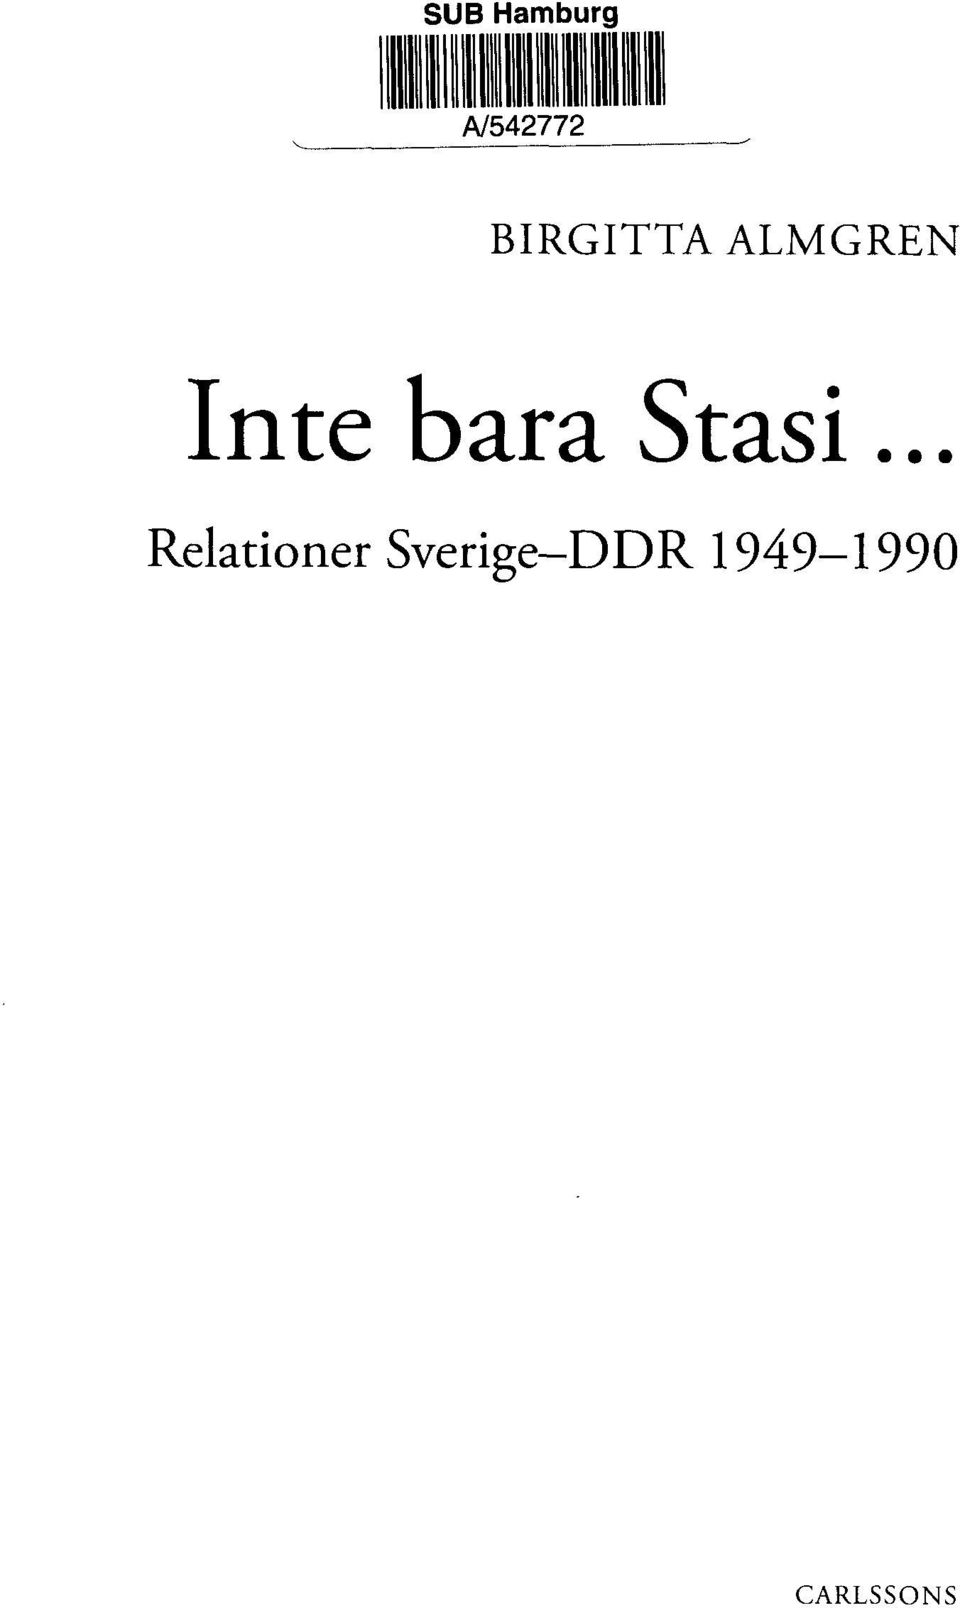 bara Stasi.